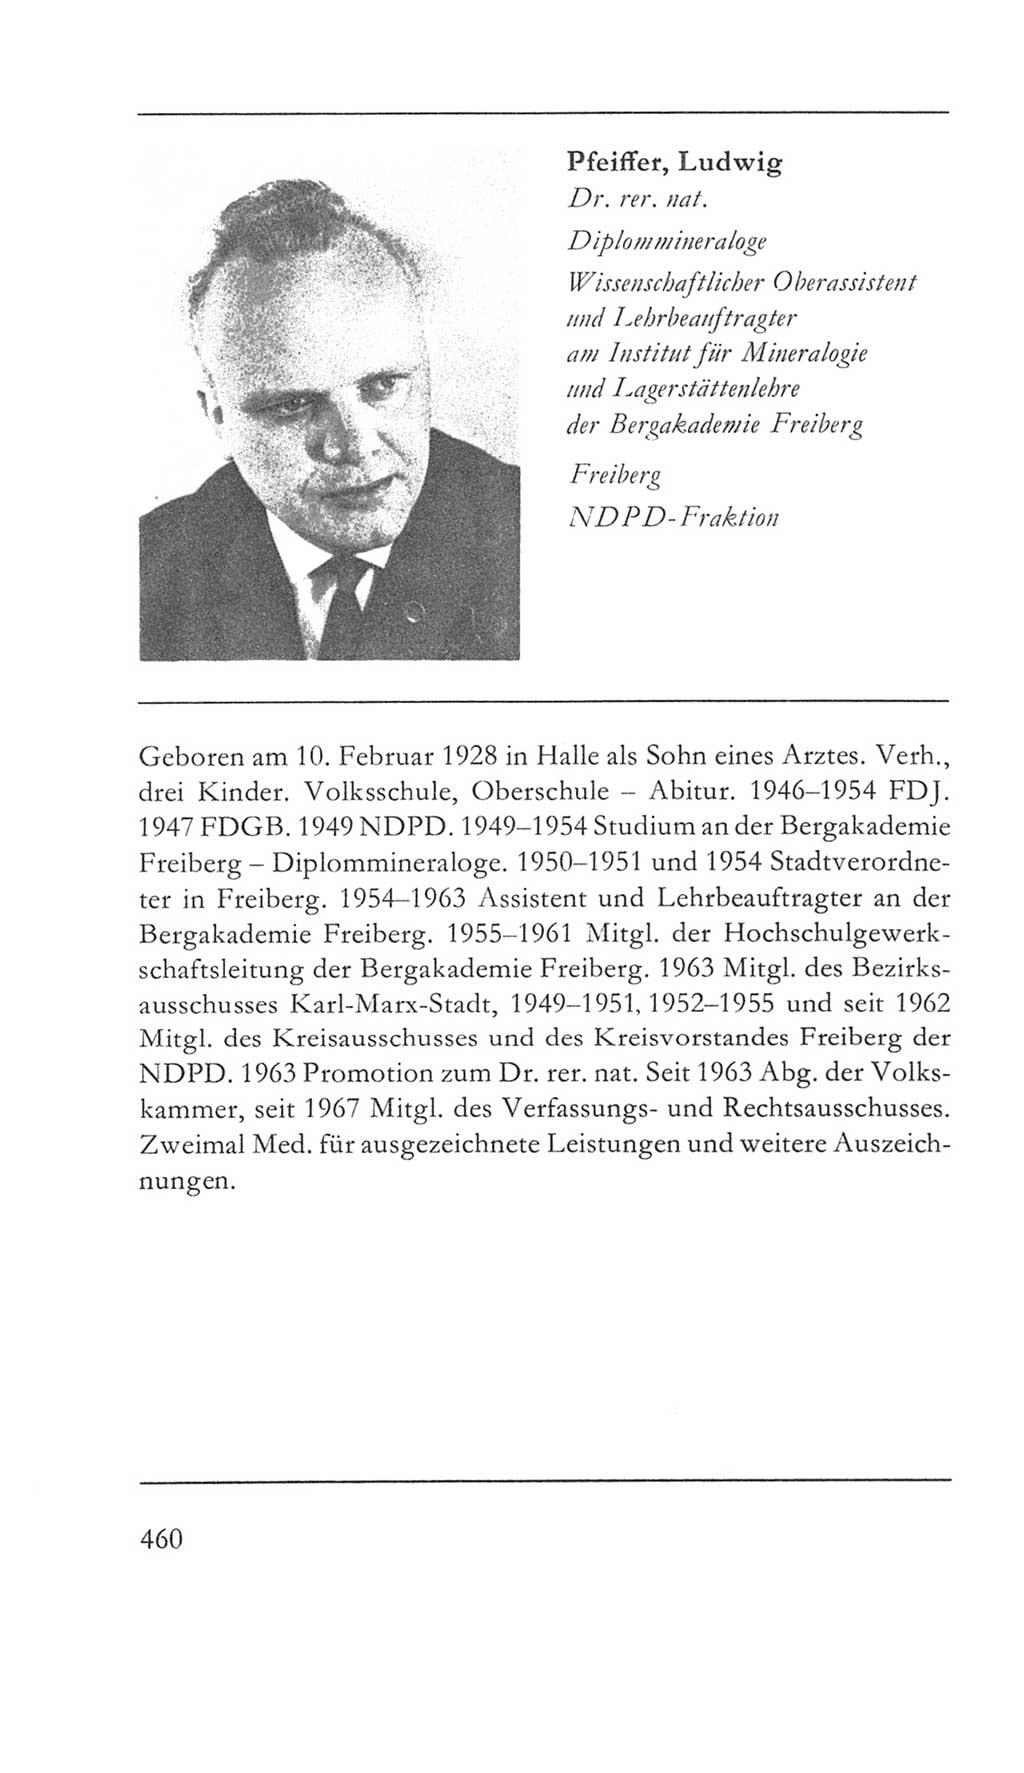 Volkskammer (VK) der Deutschen Demokratischen Republik (DDR) 5. Wahlperiode 1967-1971, Seite 460 (VK. DDR 5. WP. 1967-1971, S. 460)